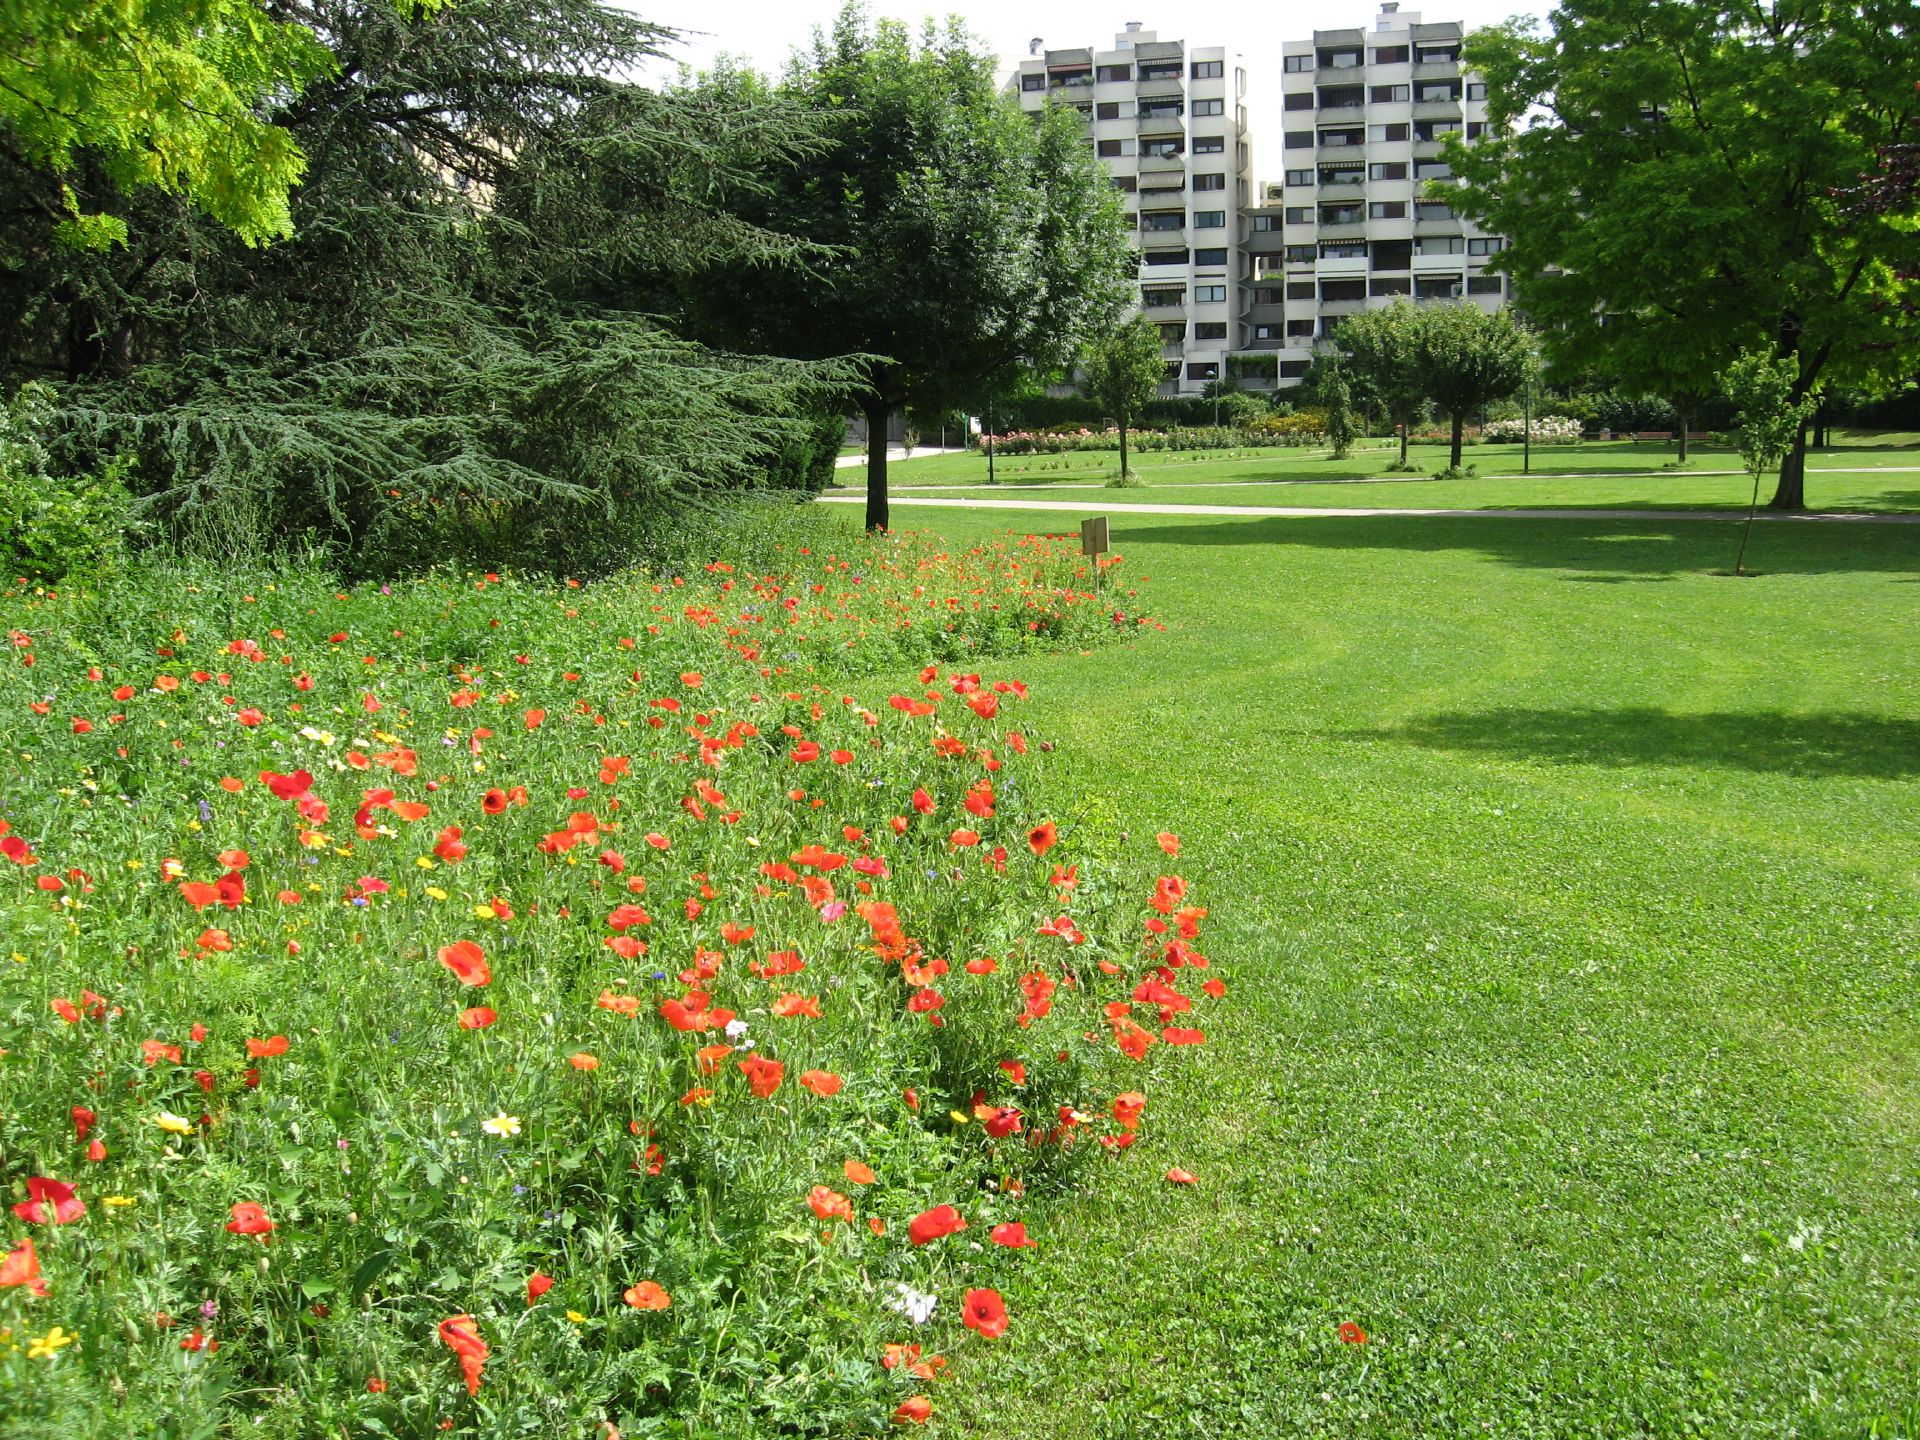 Une prairie naturelle jouxte un espace vert tondu dans le parc Maurice-Thorez, avec les immeubles du quartier en fond d'image.